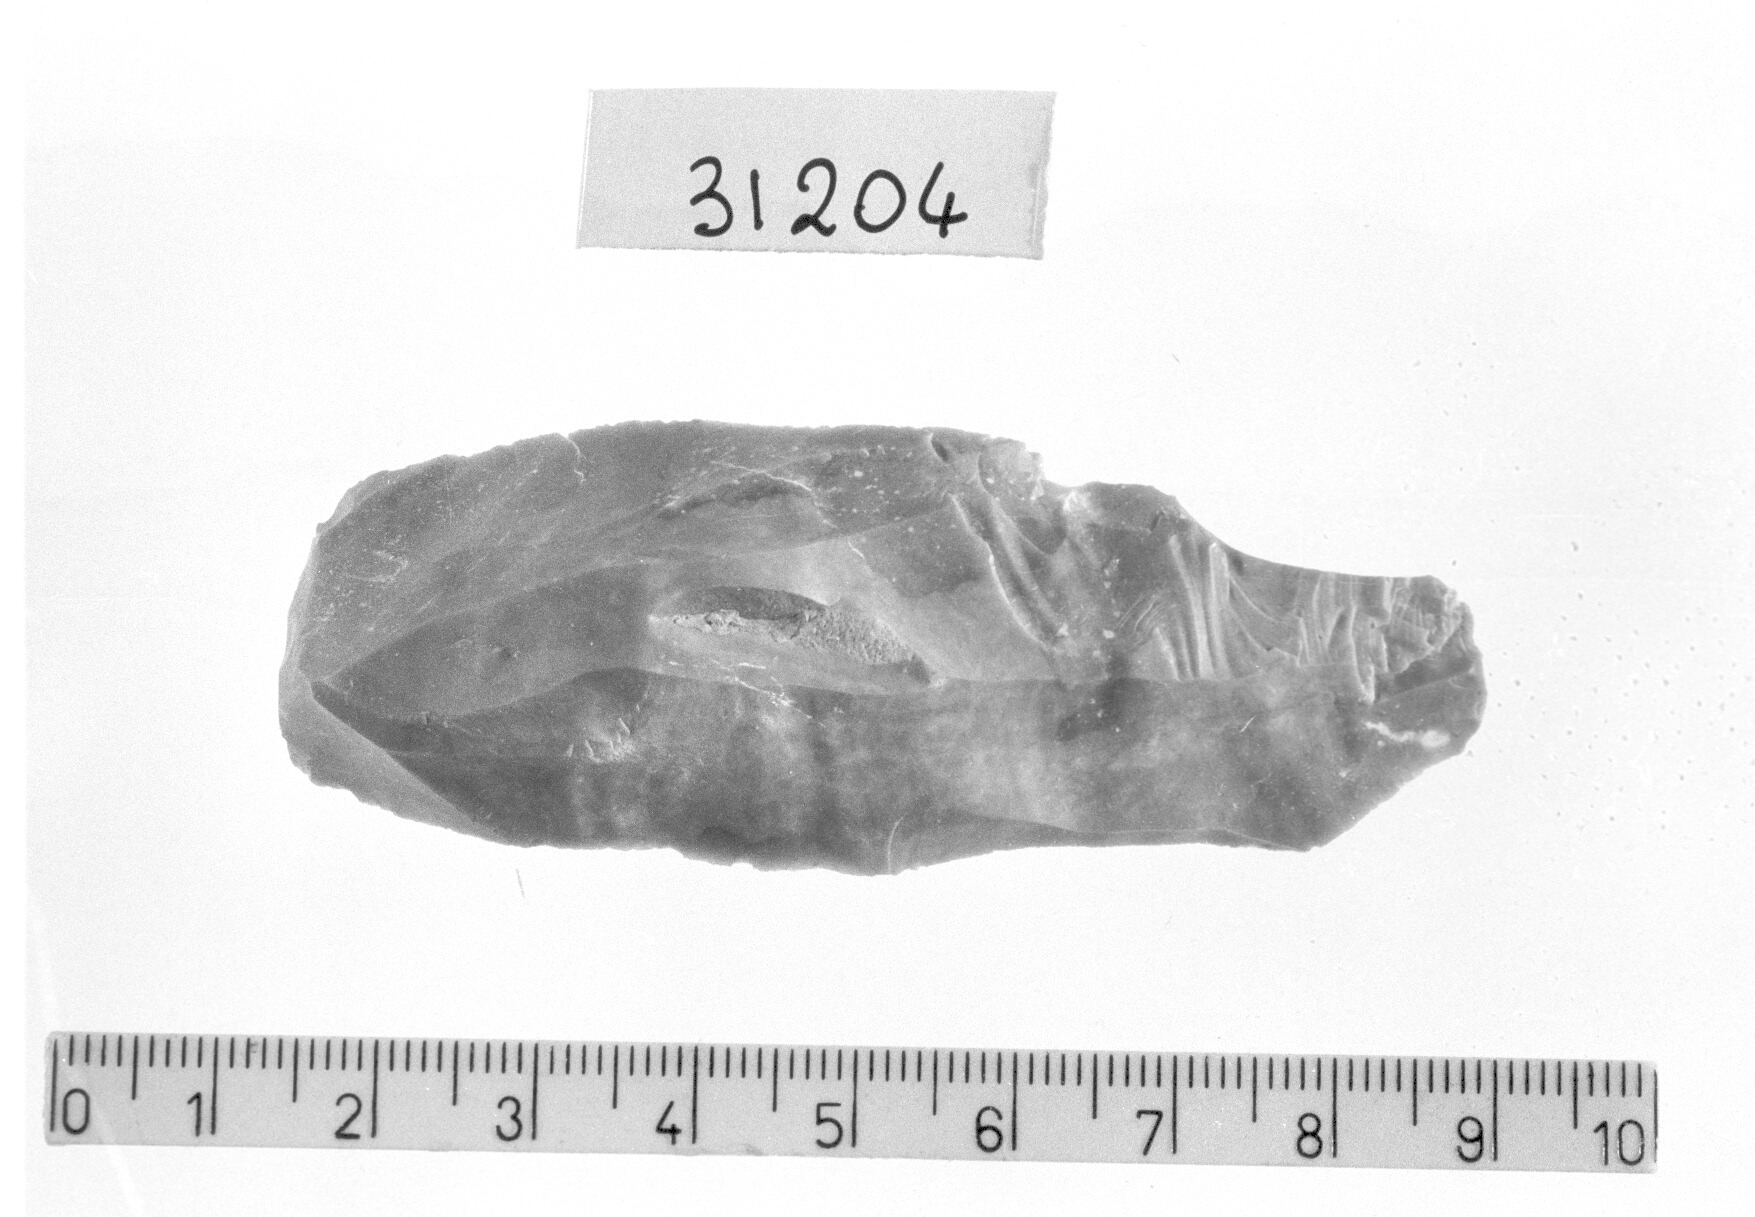 grattatoio frontale lungo - Gravettiano (Paleolitico superiore)